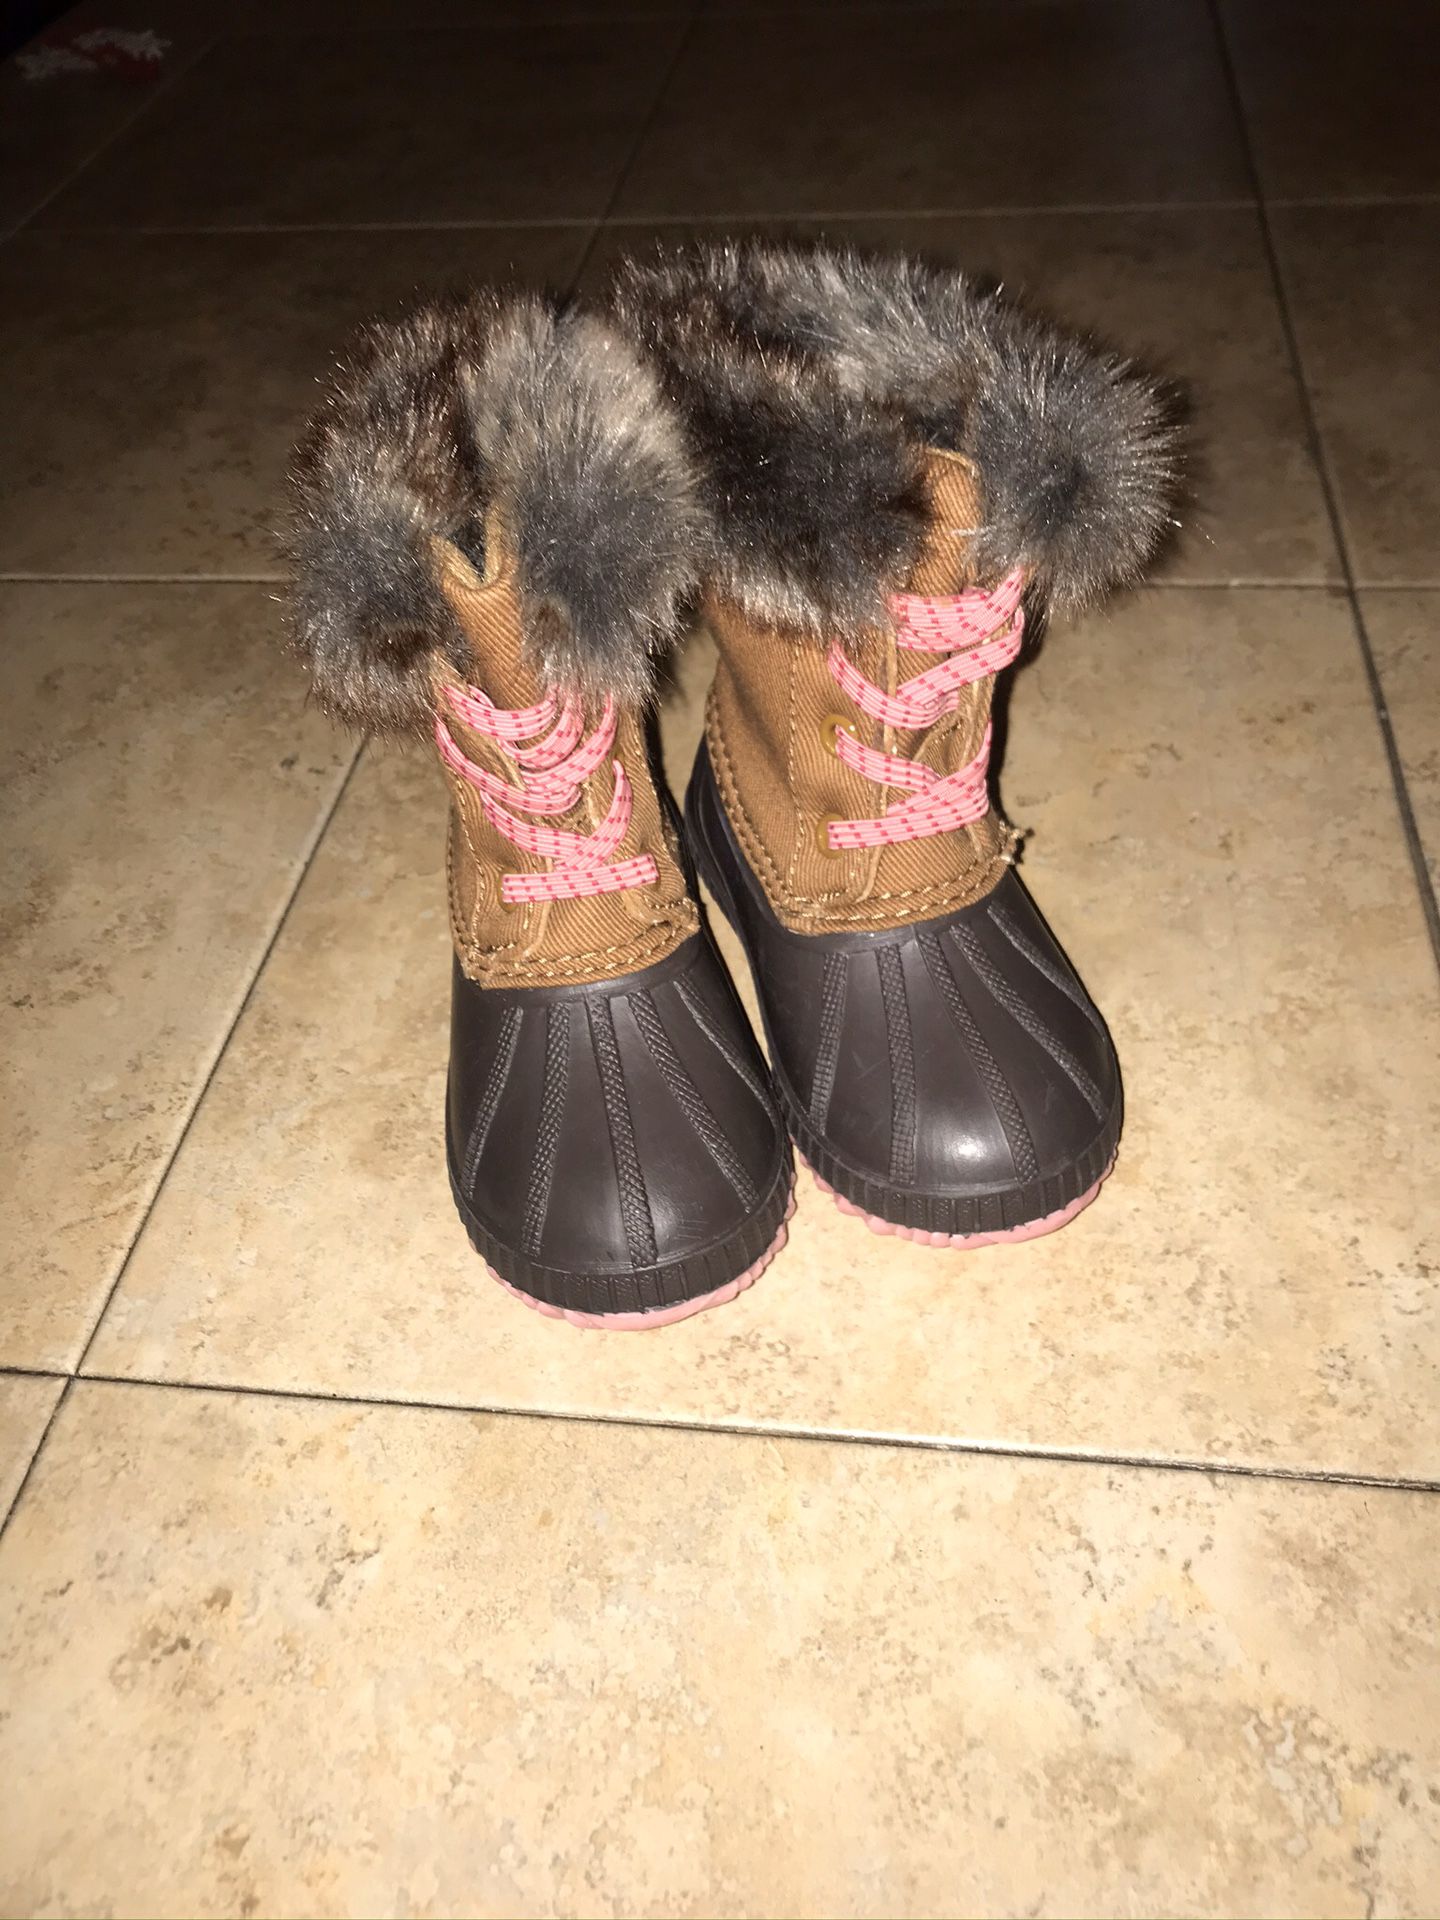 Girls winter boots